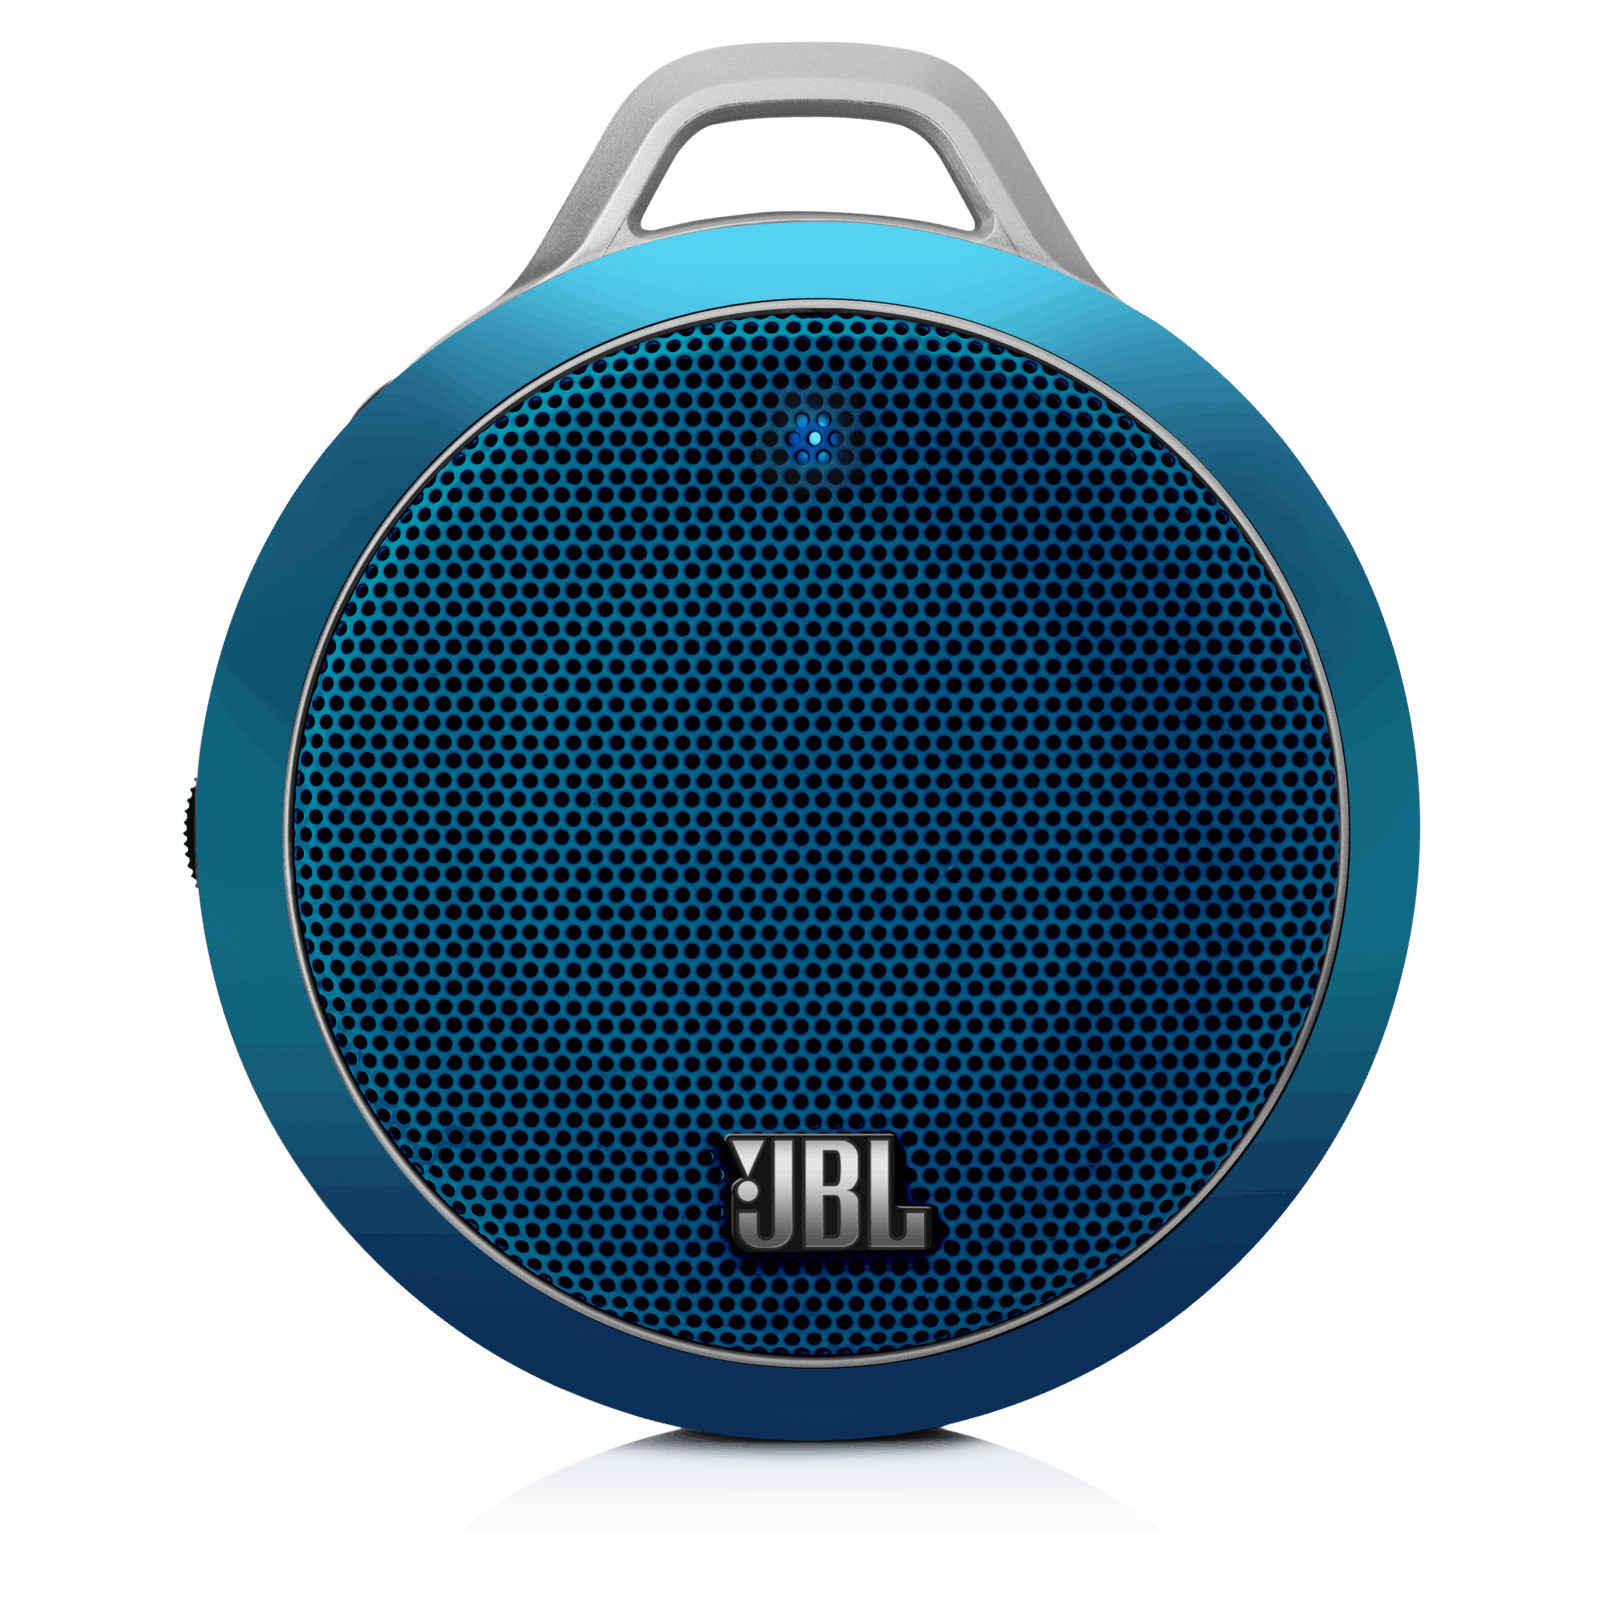 jbl speaker blinking blue